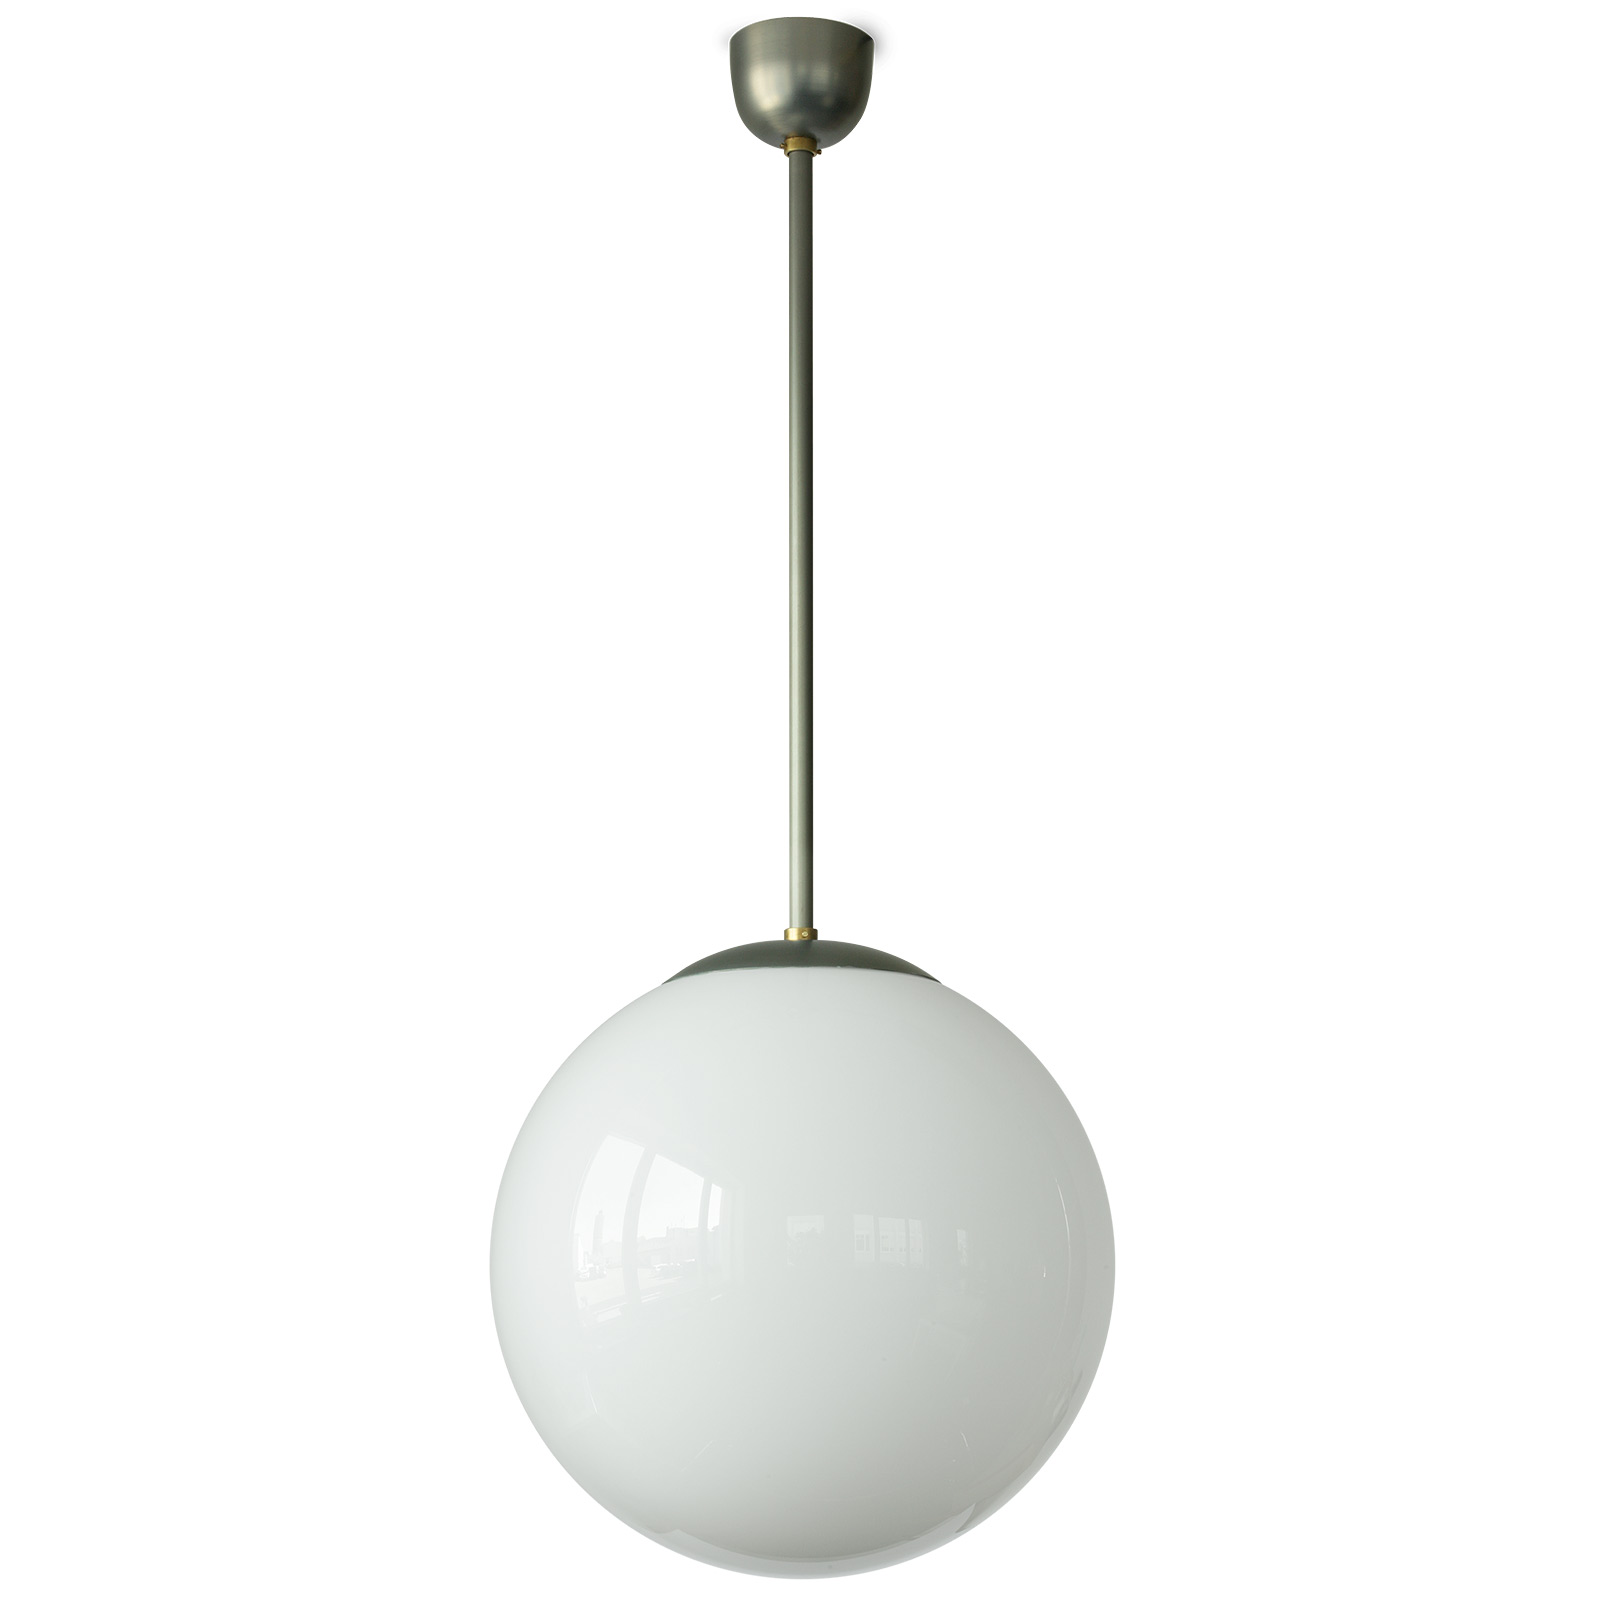 Minimalistische Kugel-Lampe MÜNCHEN: Kugelleuchte mit 40 cm Durchmesser, Stahlblech Klarlack matt